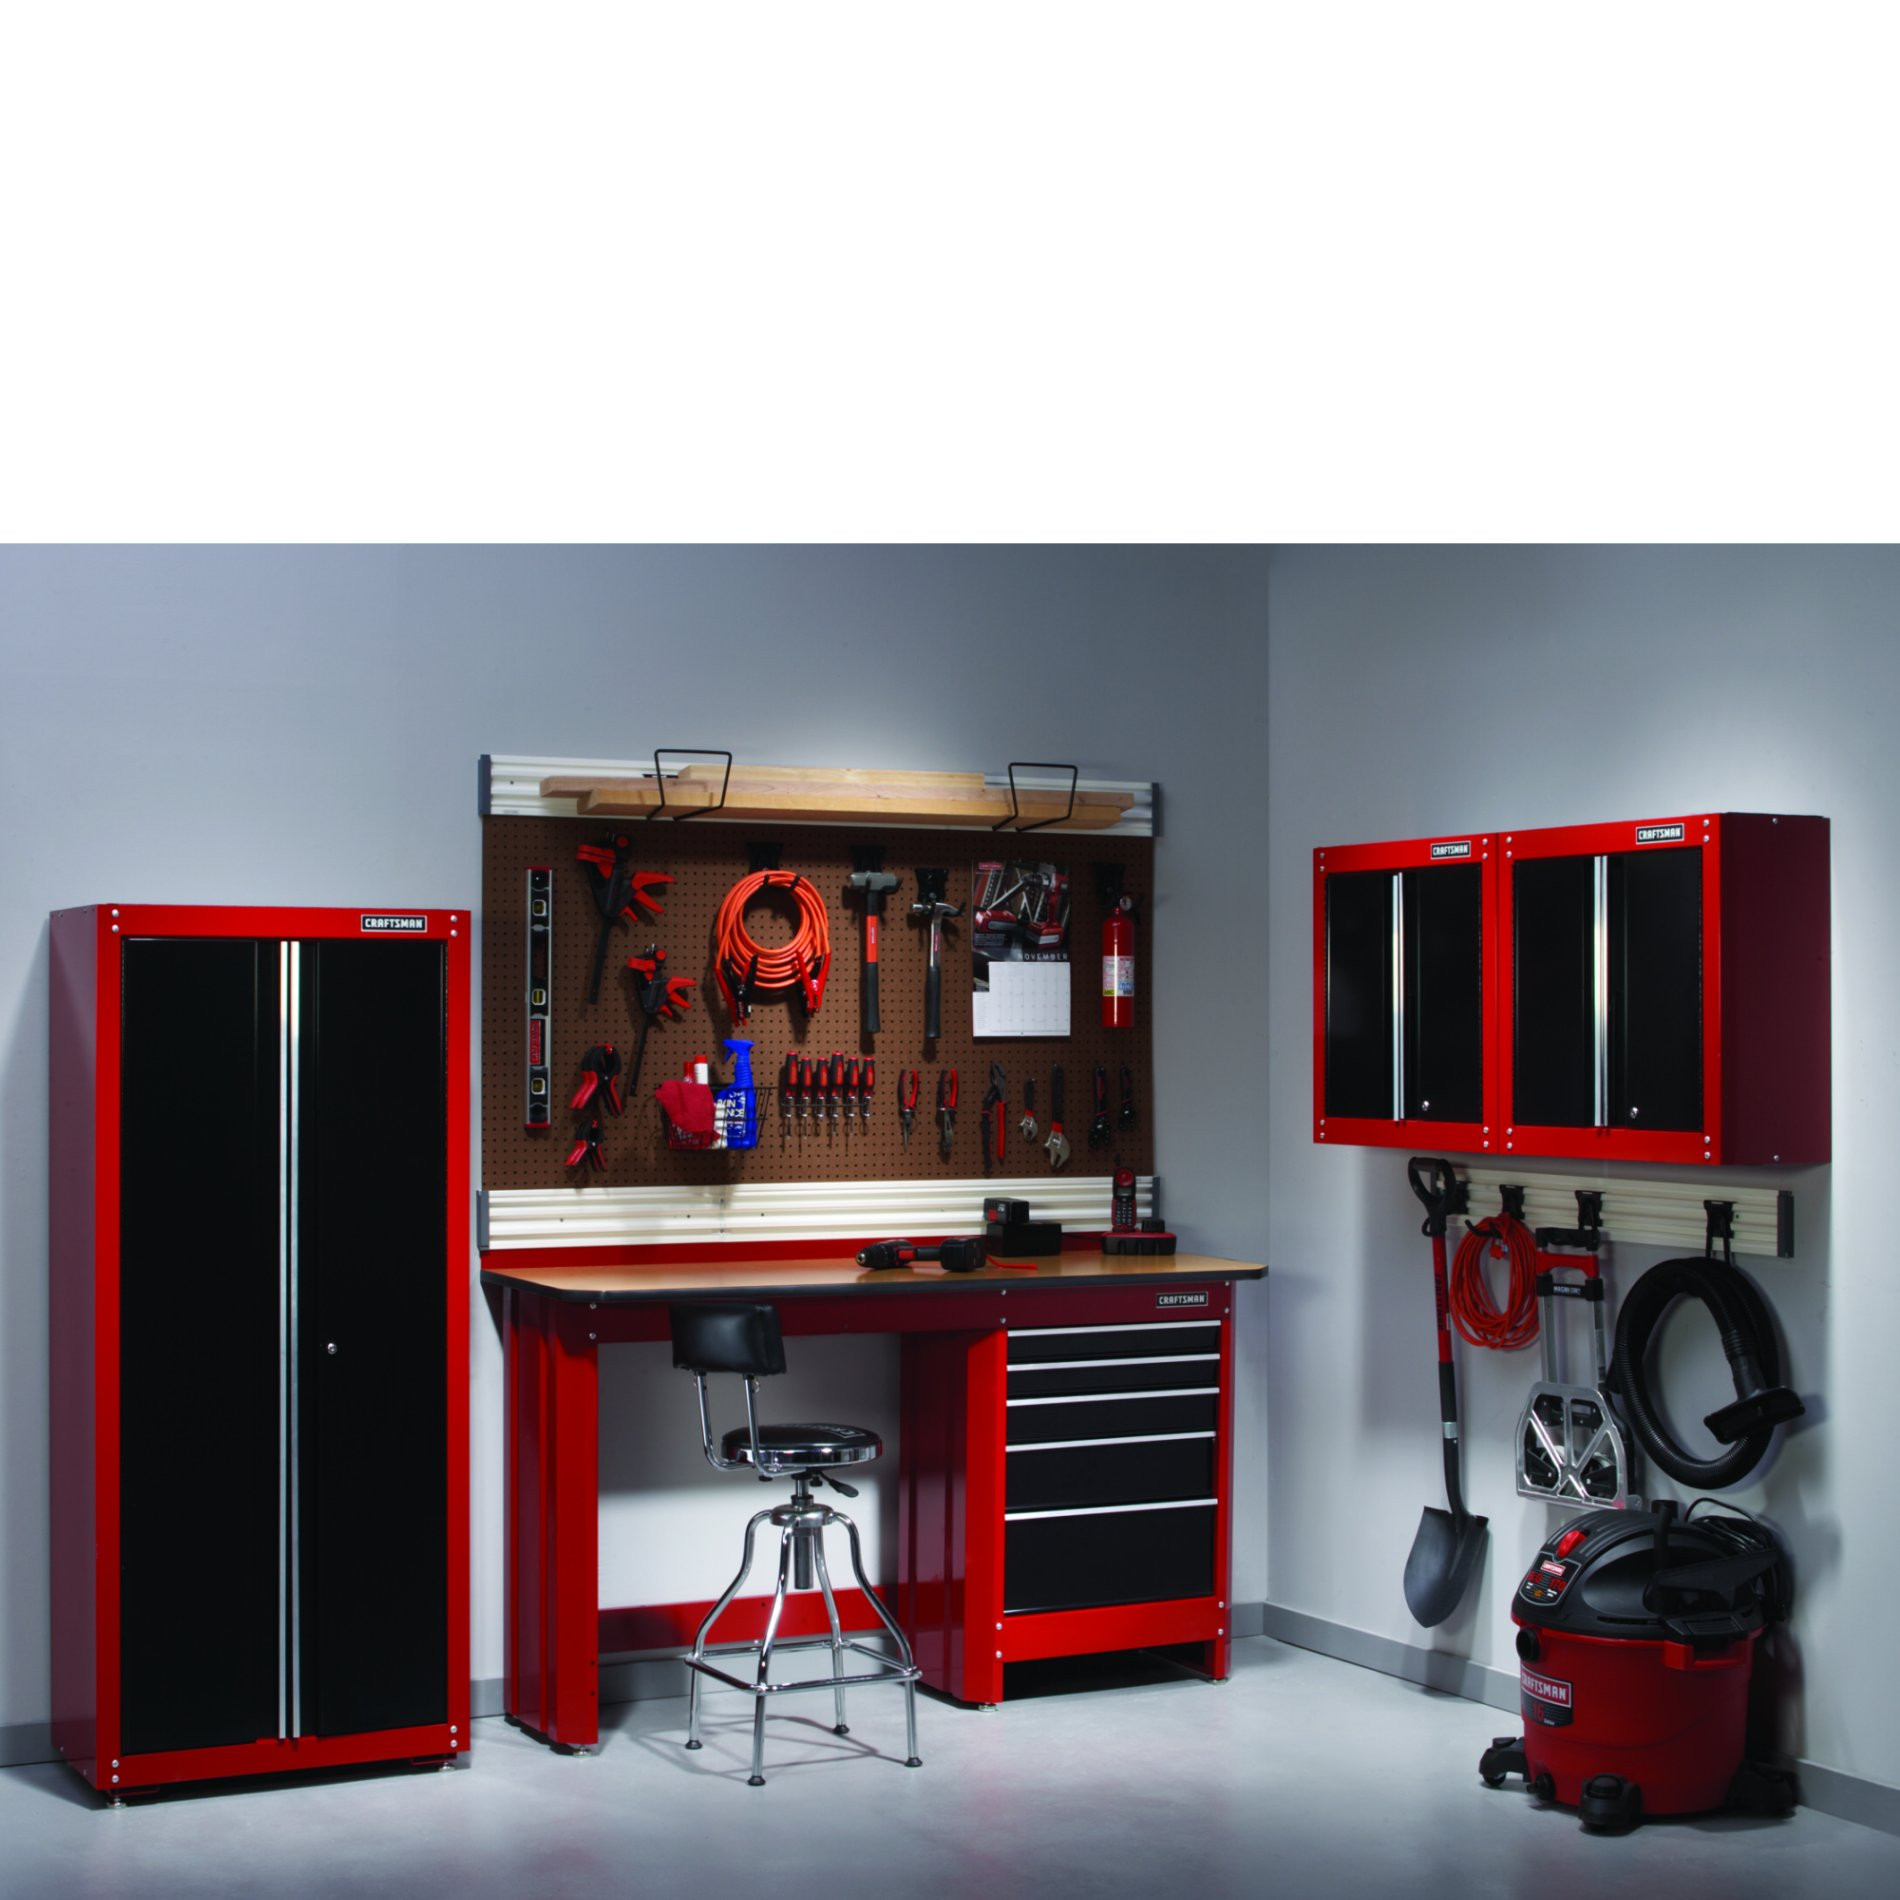 Best ideas about Craftsman Garage Storage
. Save or Pin craftsman garage cabinets storage Now.